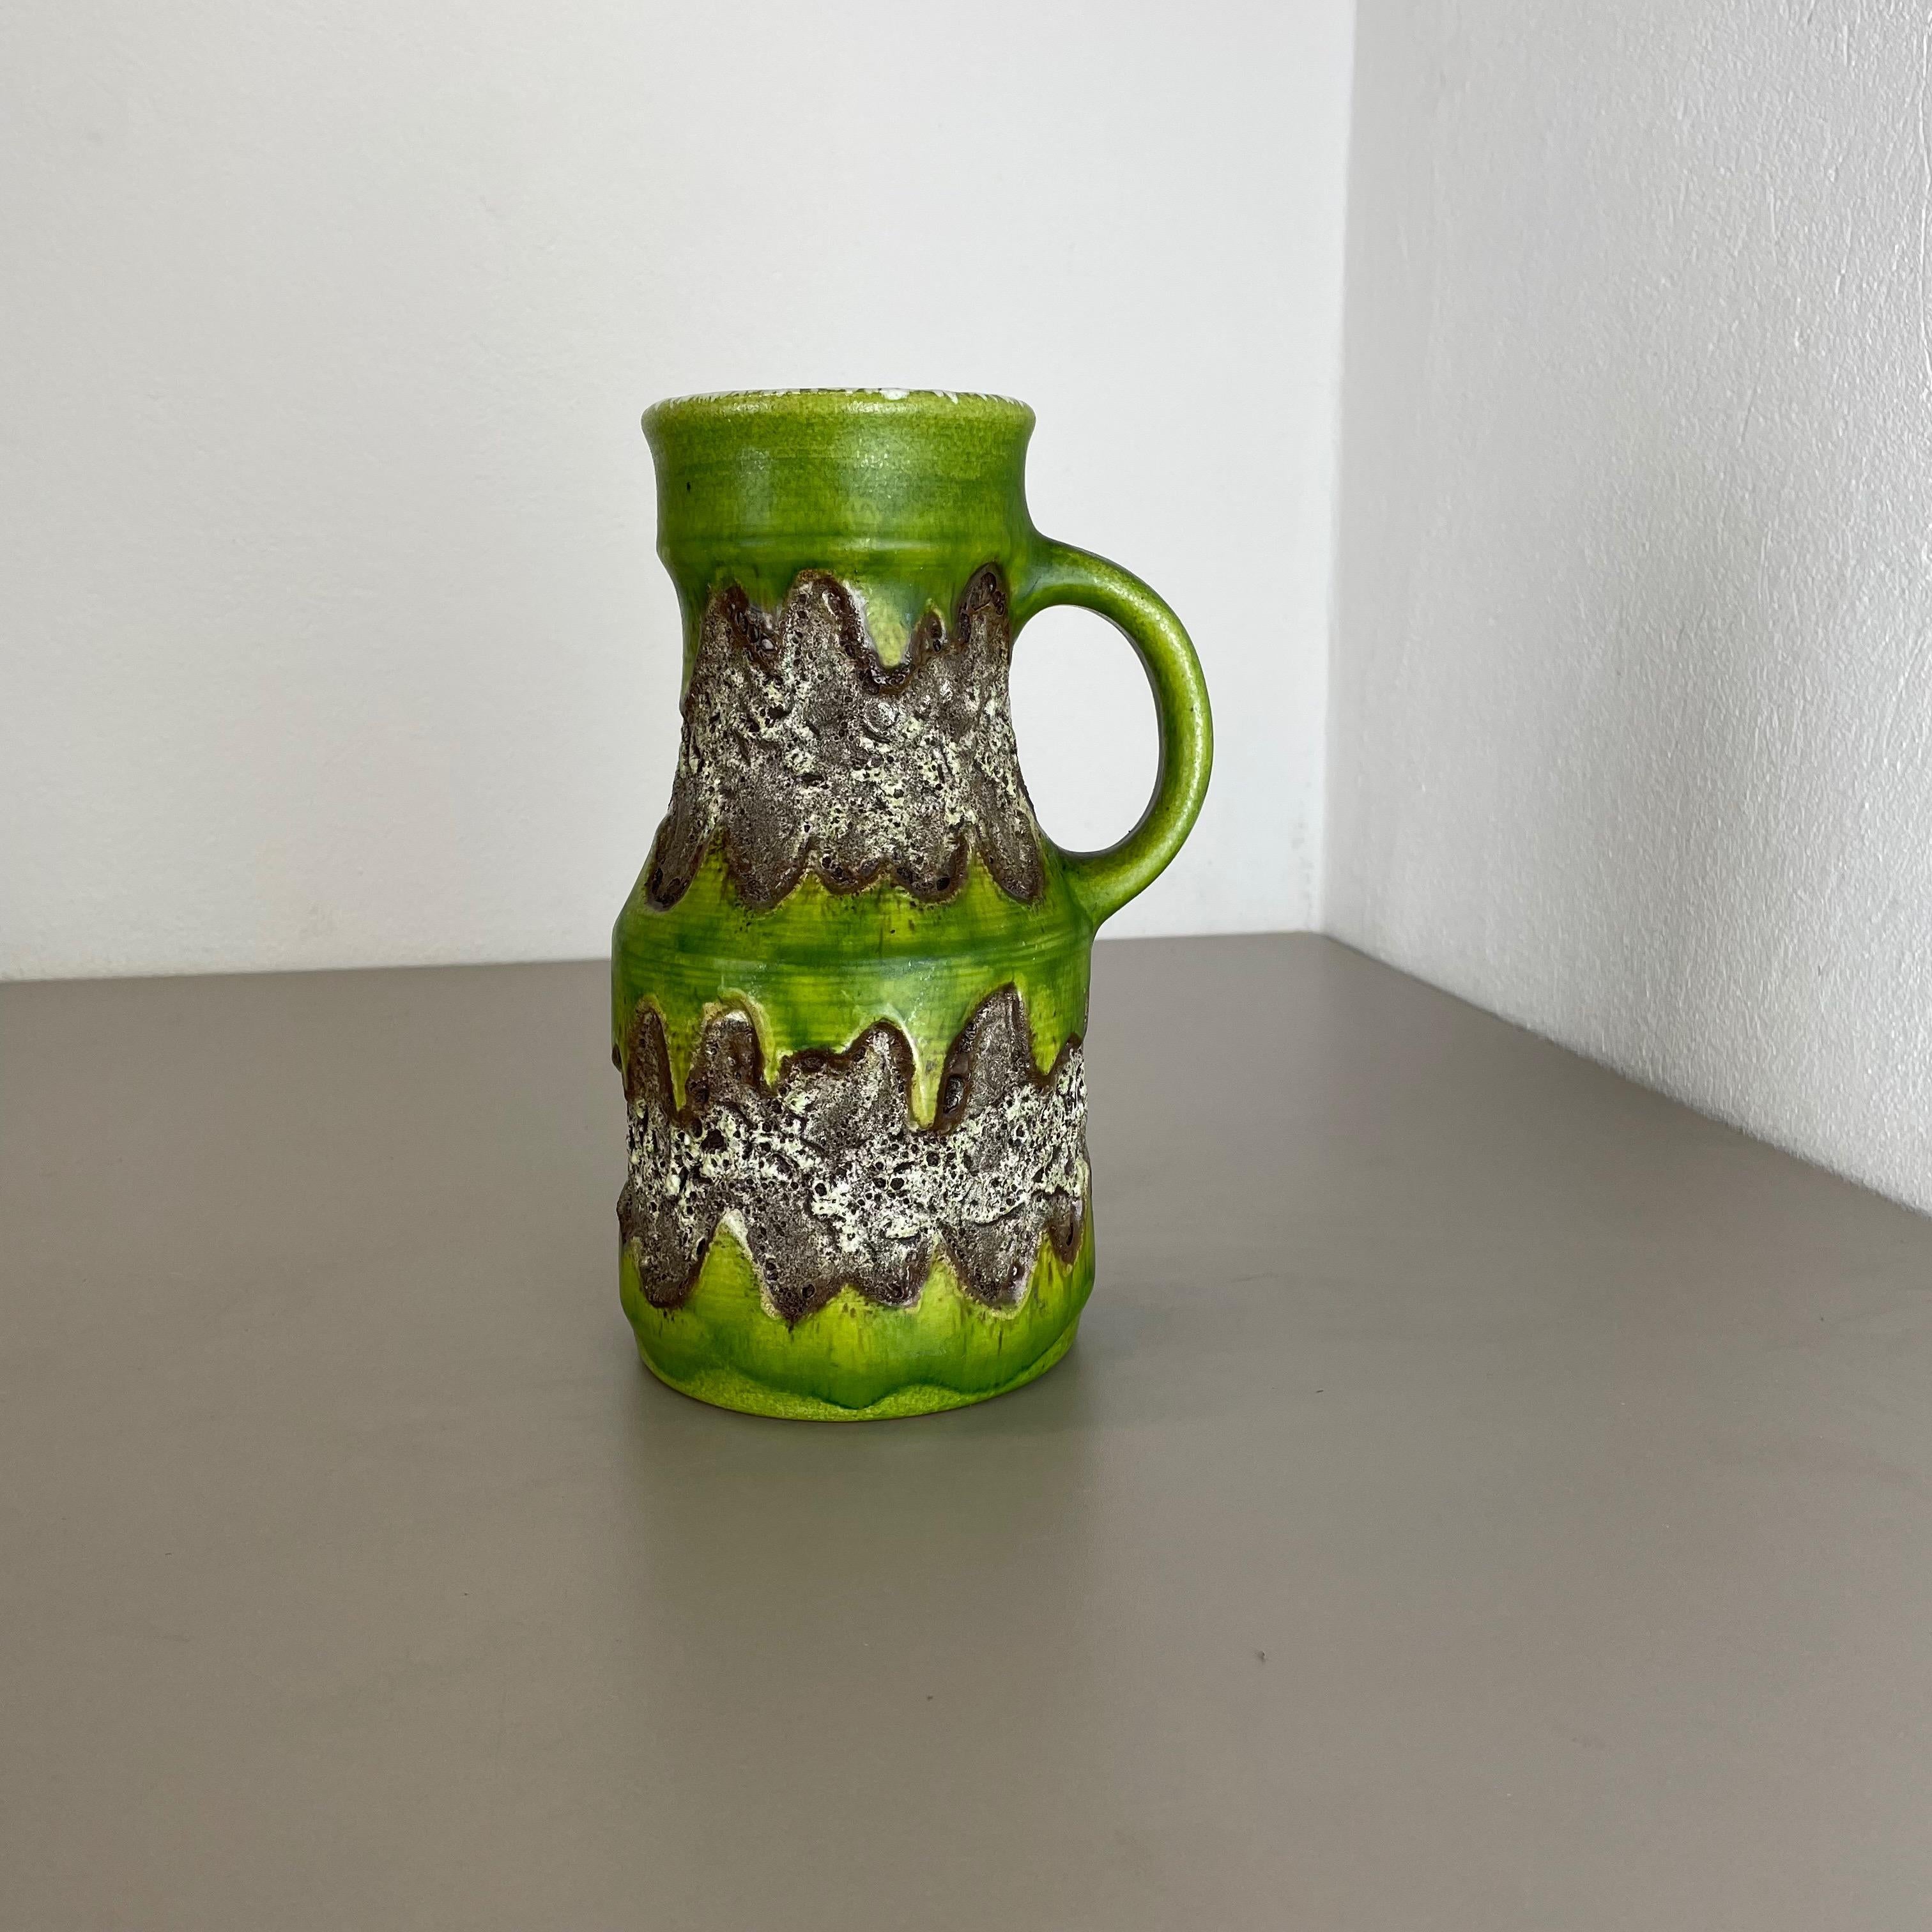 Artikel:

Vase aus Keramik 


Produzent:

Dümmler und Breiden, Deutschland


Jahrzehnt:

1970s





Original Vintage Keramikvase aus den 1970er Jahren, hergestellt in Deutschland. Hochwertige deutsche Produktion mit einer schönen